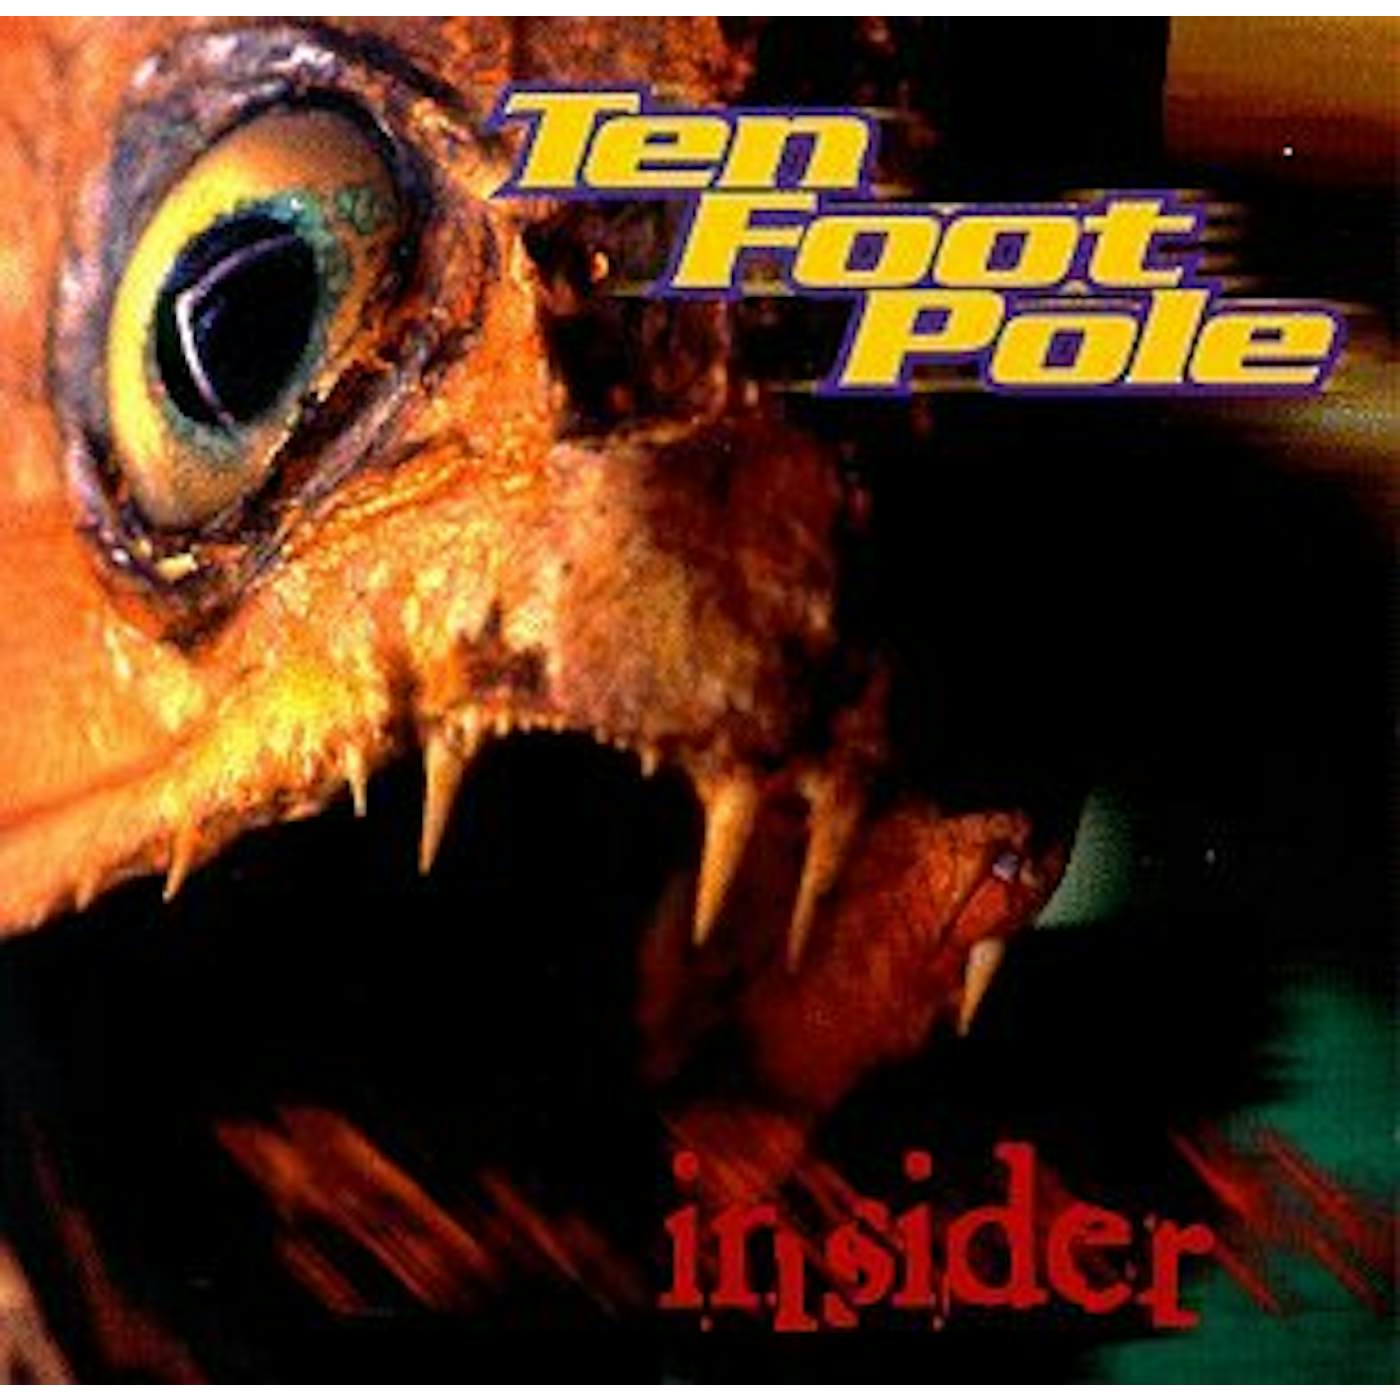 Ten Foot Pole Insider Vinyl Record